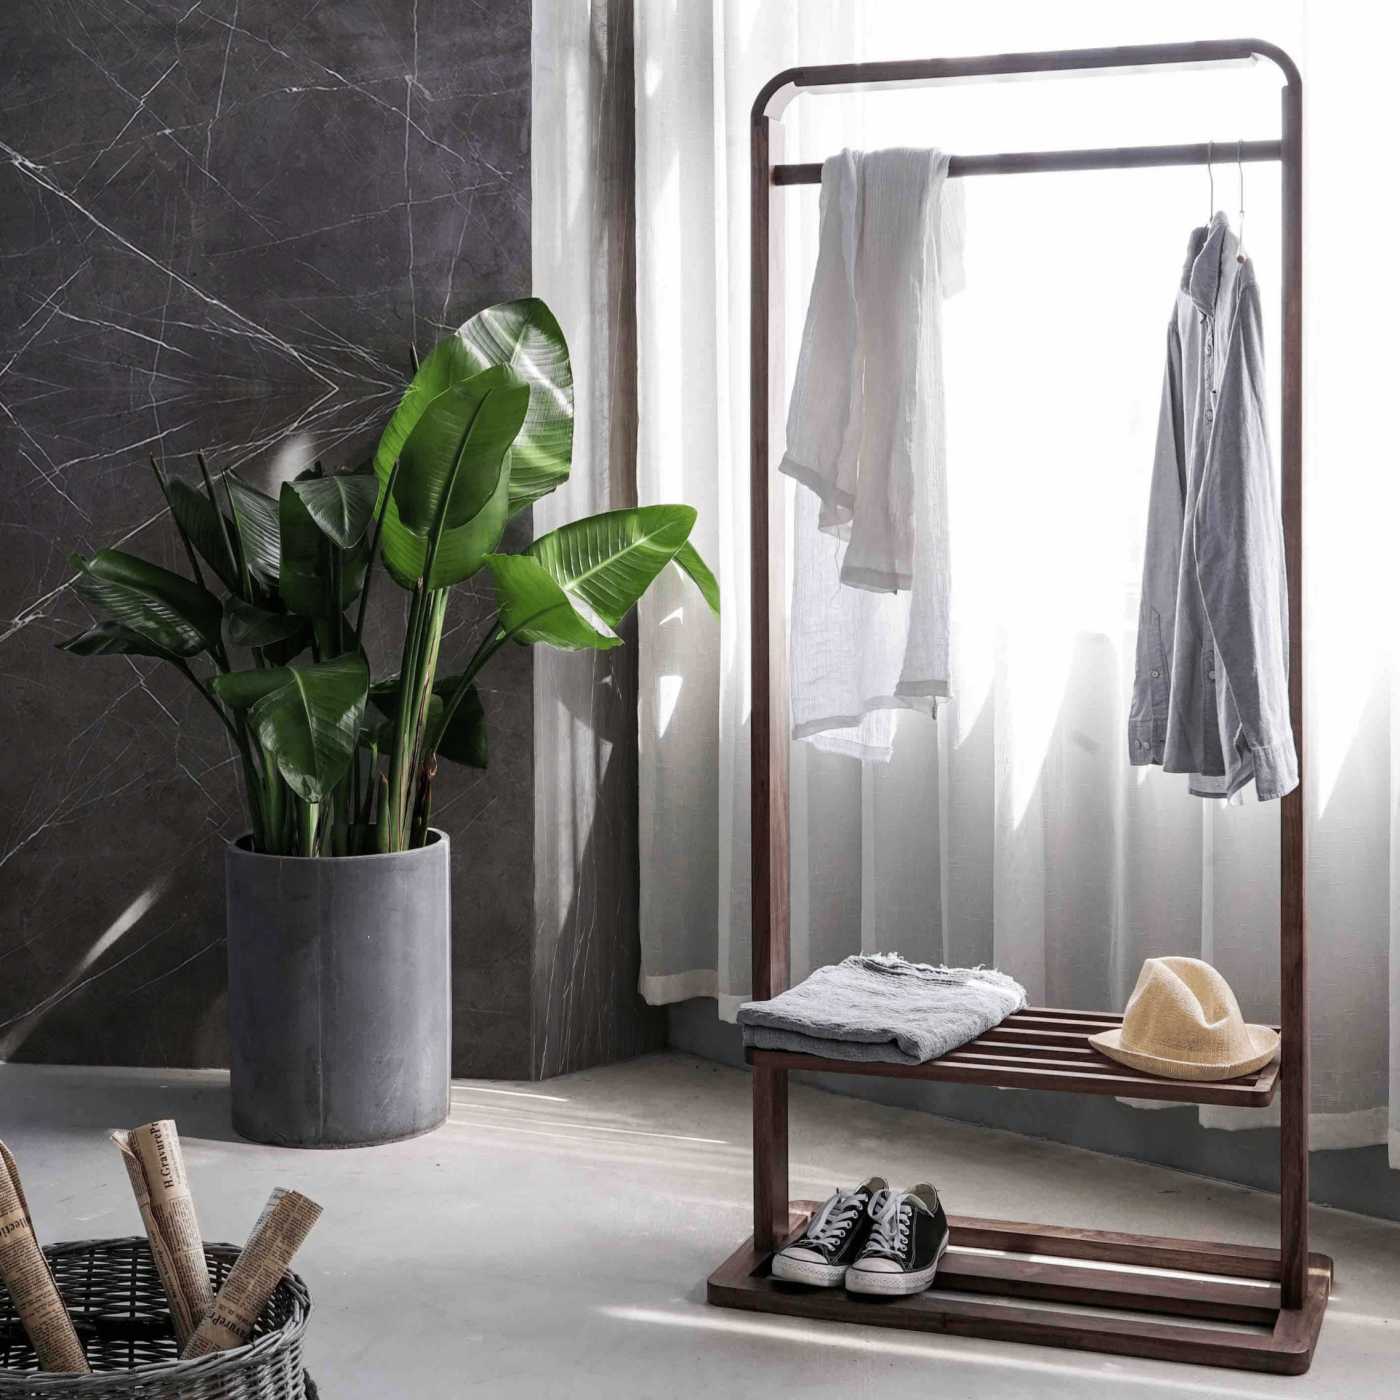 5 motivi per reinventare il bagno in stile moderno con lastre in gres